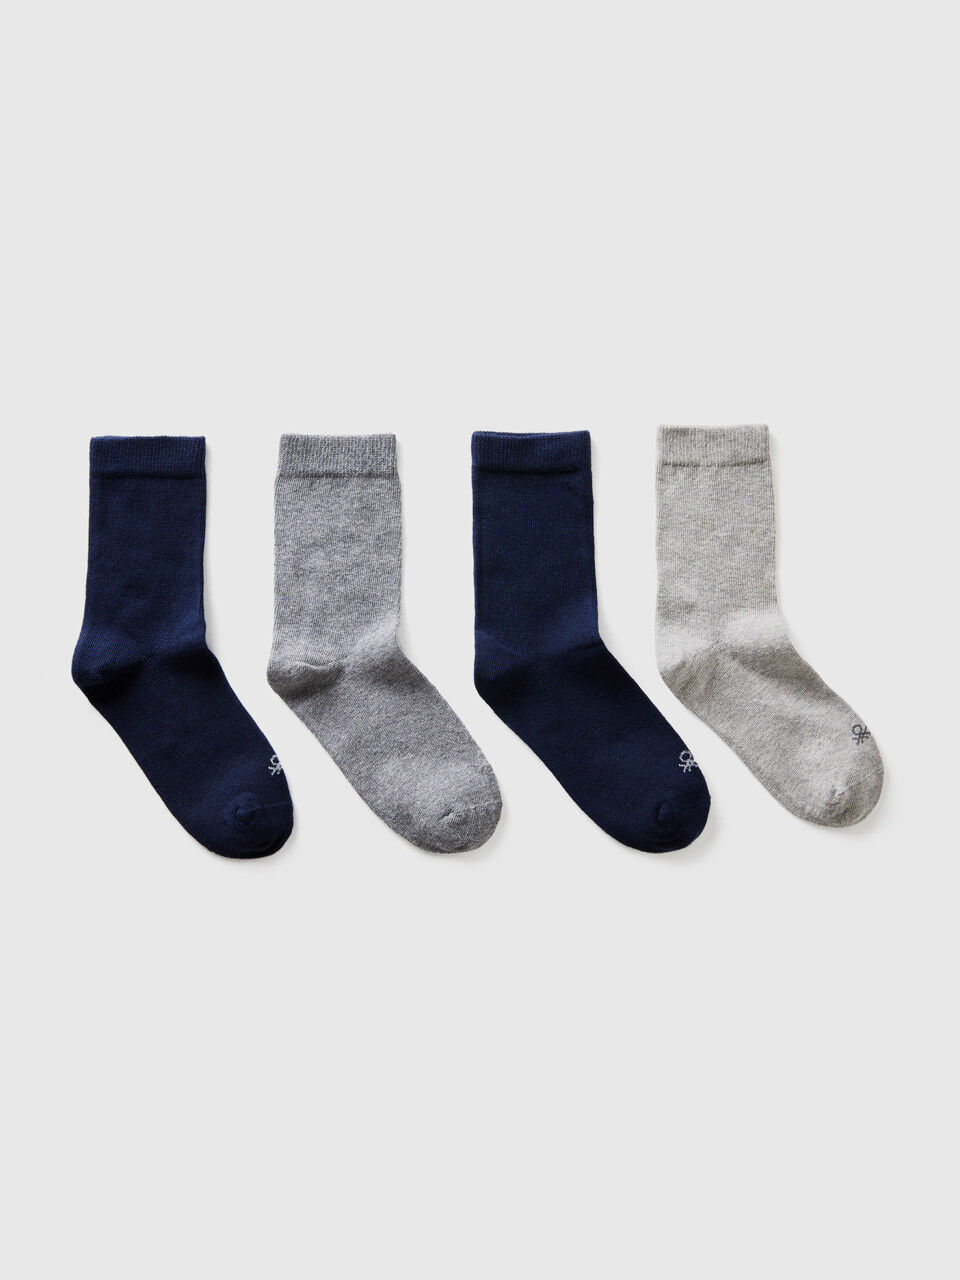 Quattro paia di calze grigie e blu